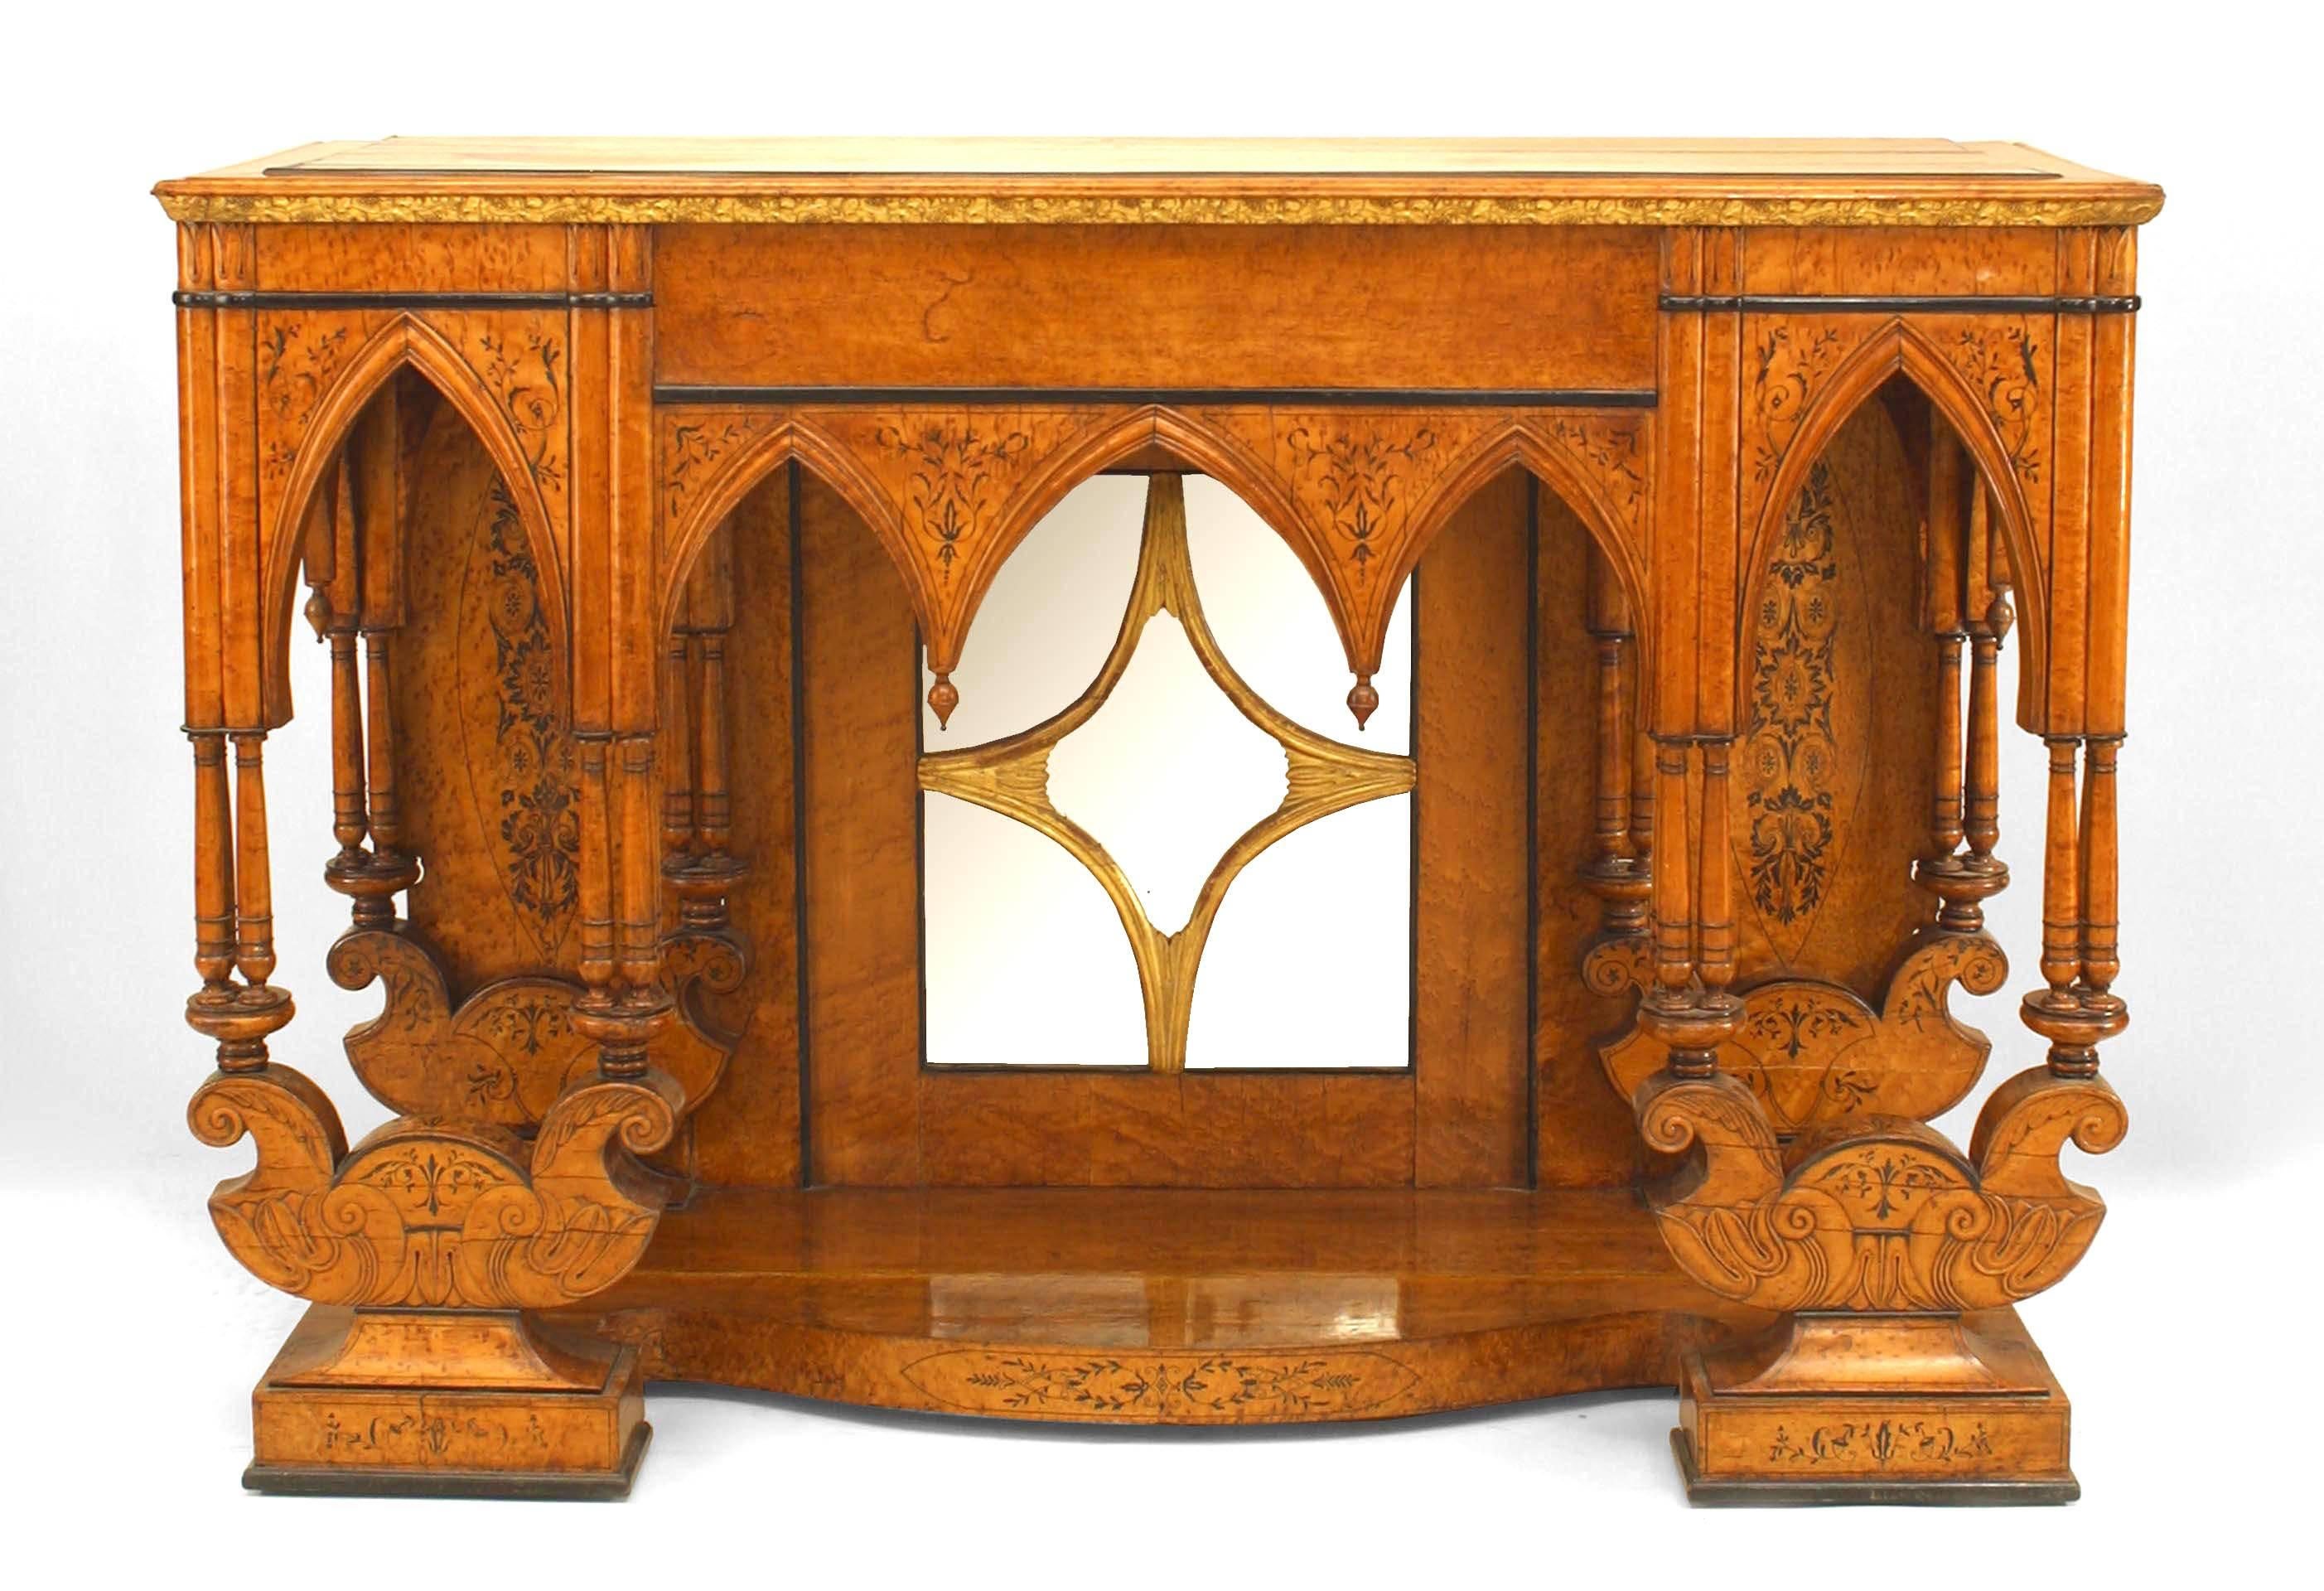 Französisch Charles X Vogelaugenahorn und ebonisiert trimmen und Intarsien Gothic Design Konsolentisch mit Plattform Basis und gespiegelt zurück mit vergoldeten floralen geschnitzten Rand auf der Oberseite.
